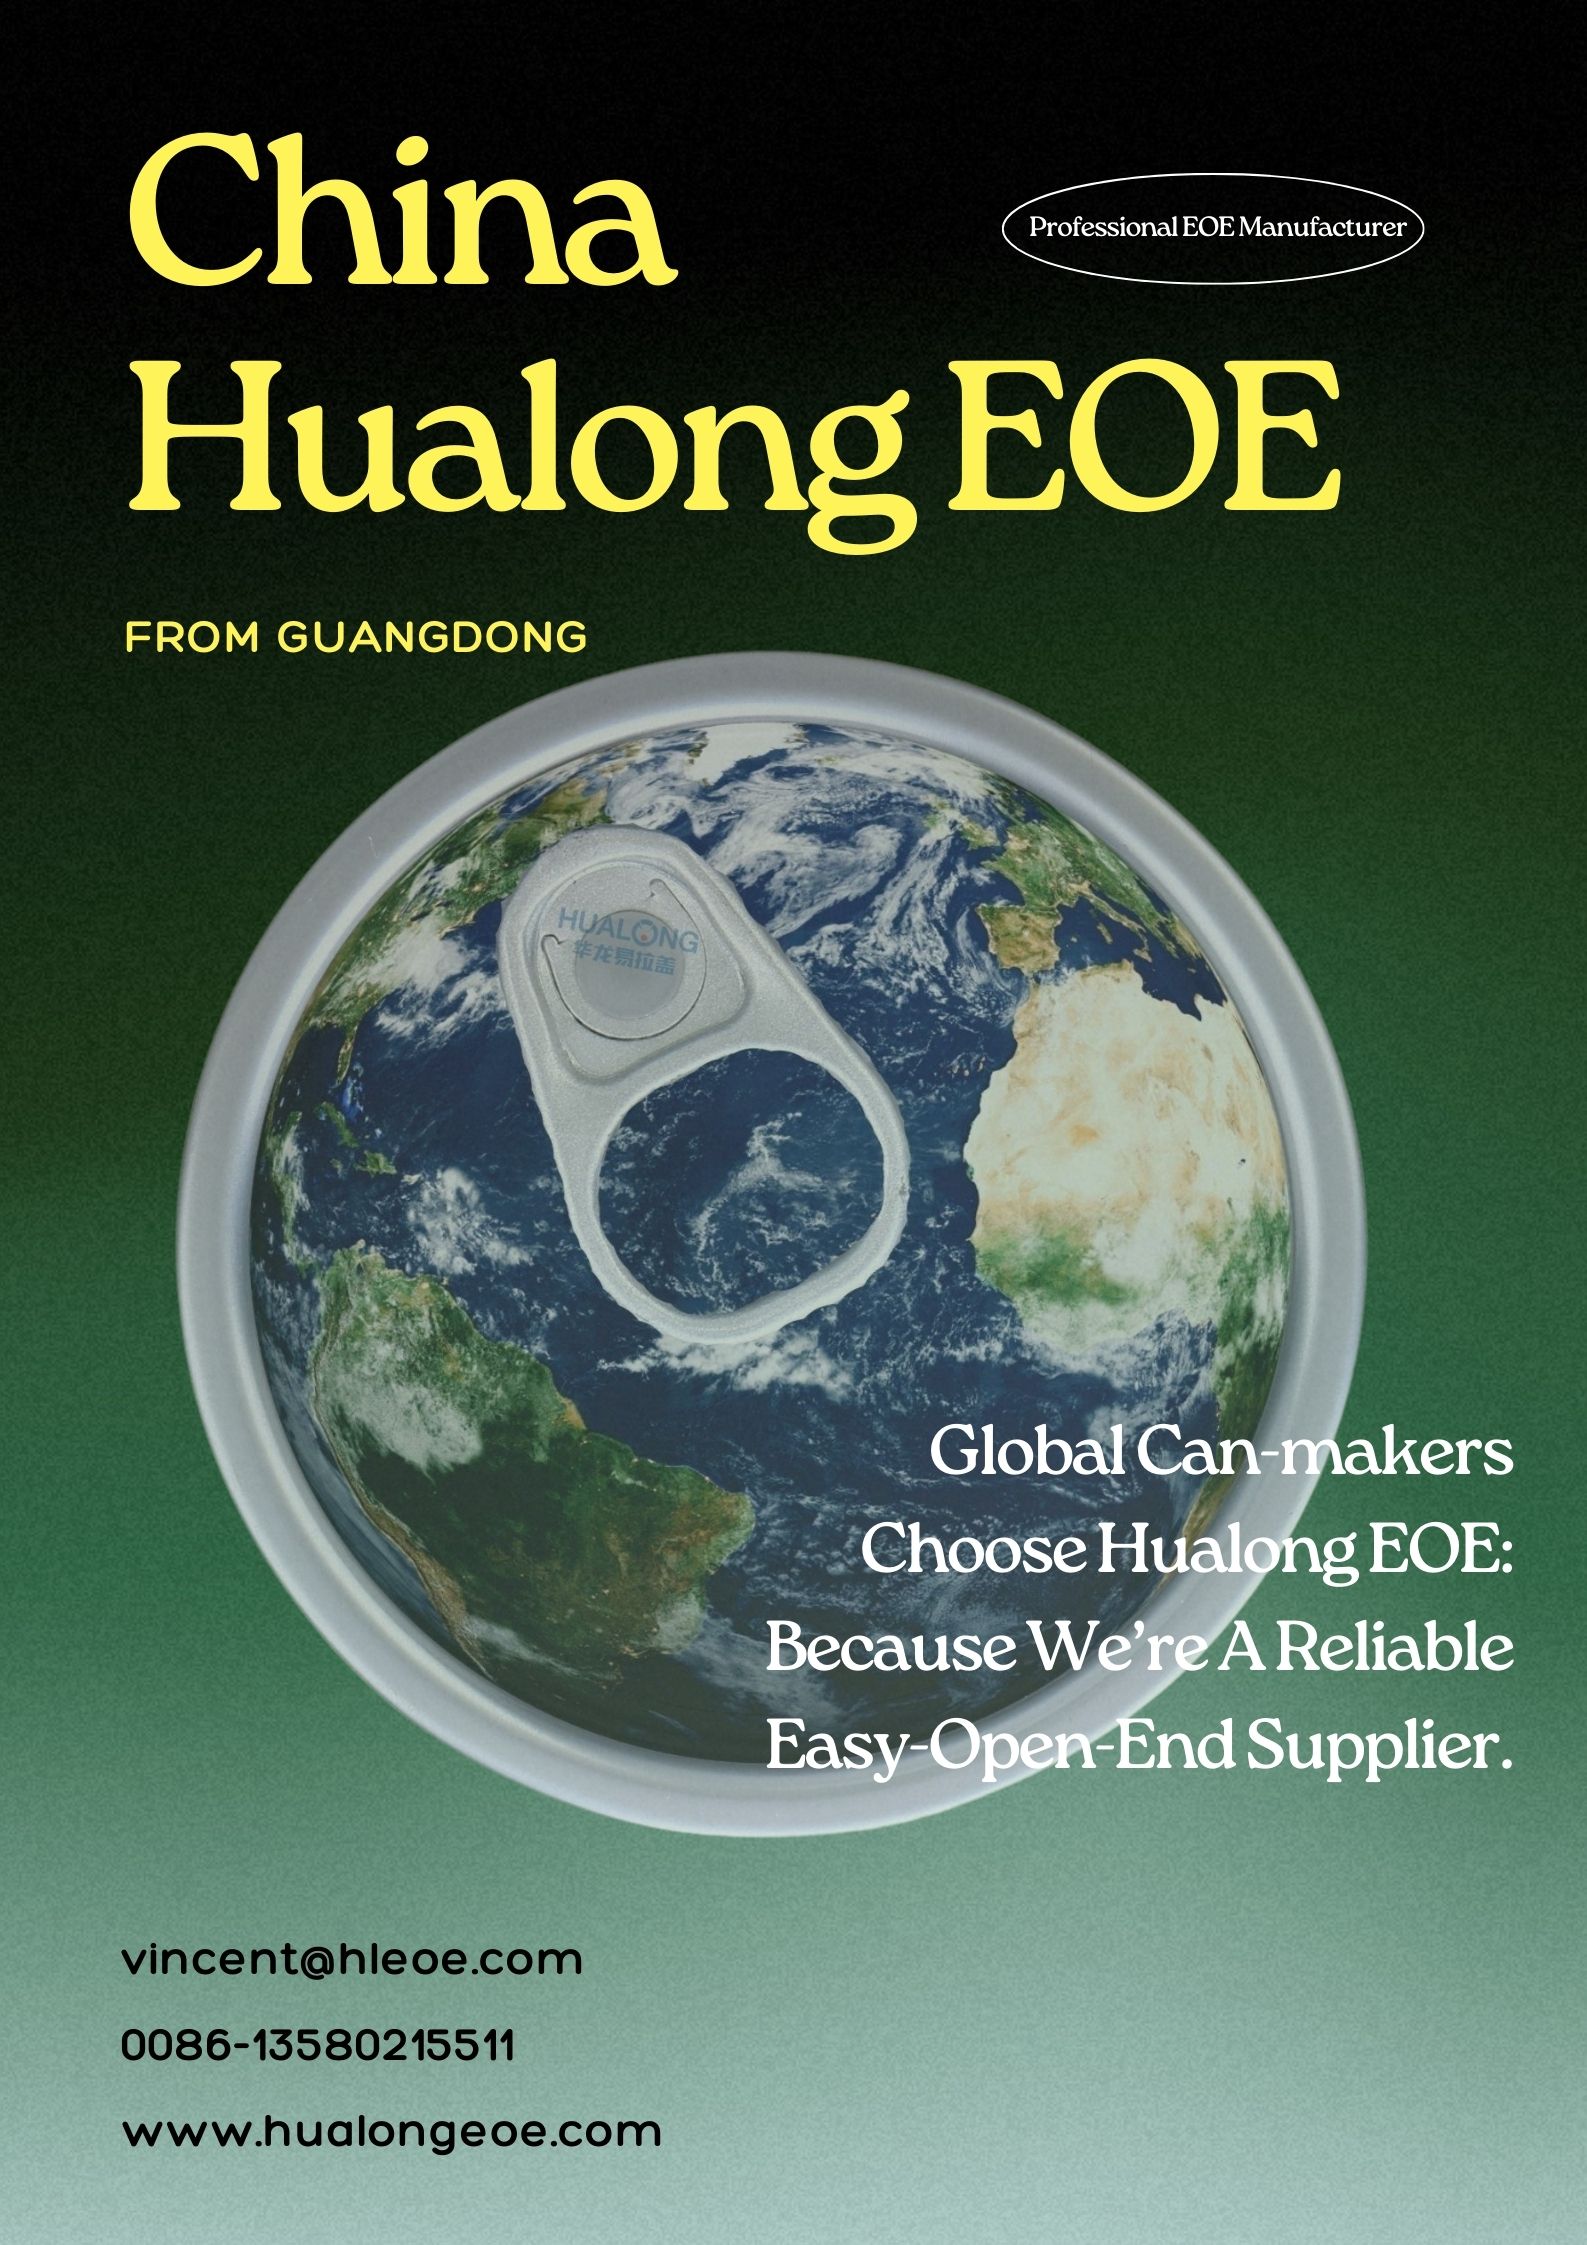 Termékmegbízhatóság a Hualong EOE-től